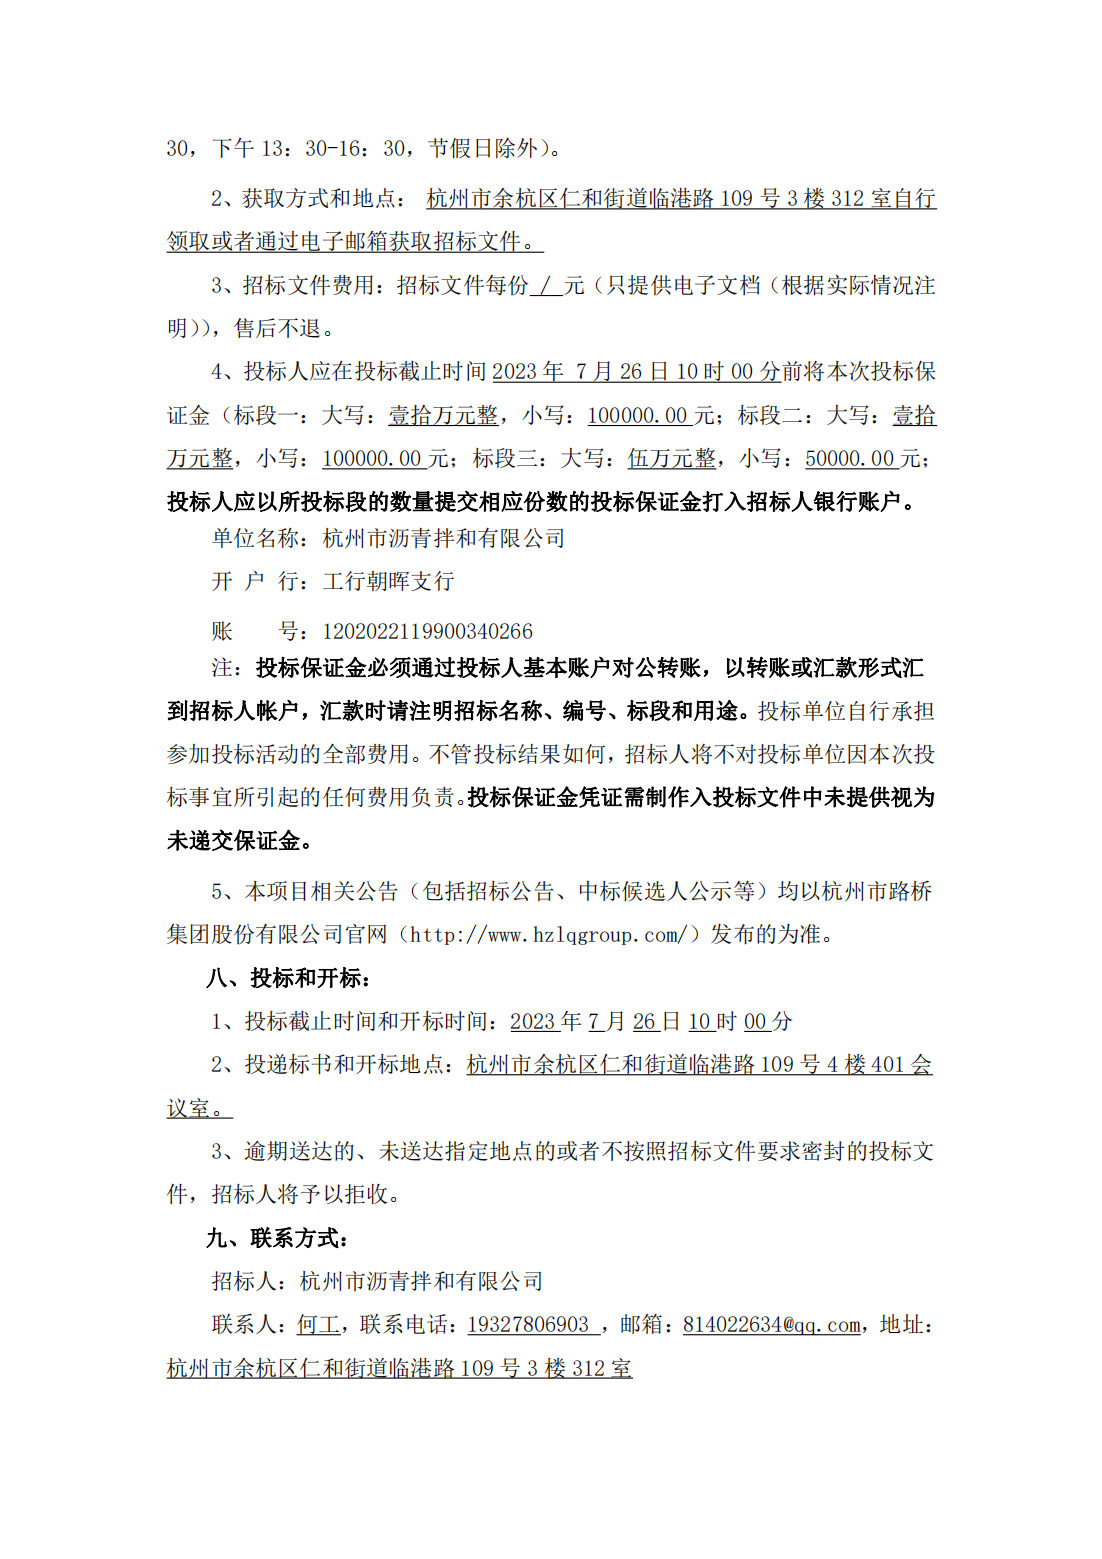 招标公告-杭州市沥青拌和有限公司2023-2024年度机械设备租赁服务招标项目_01.png